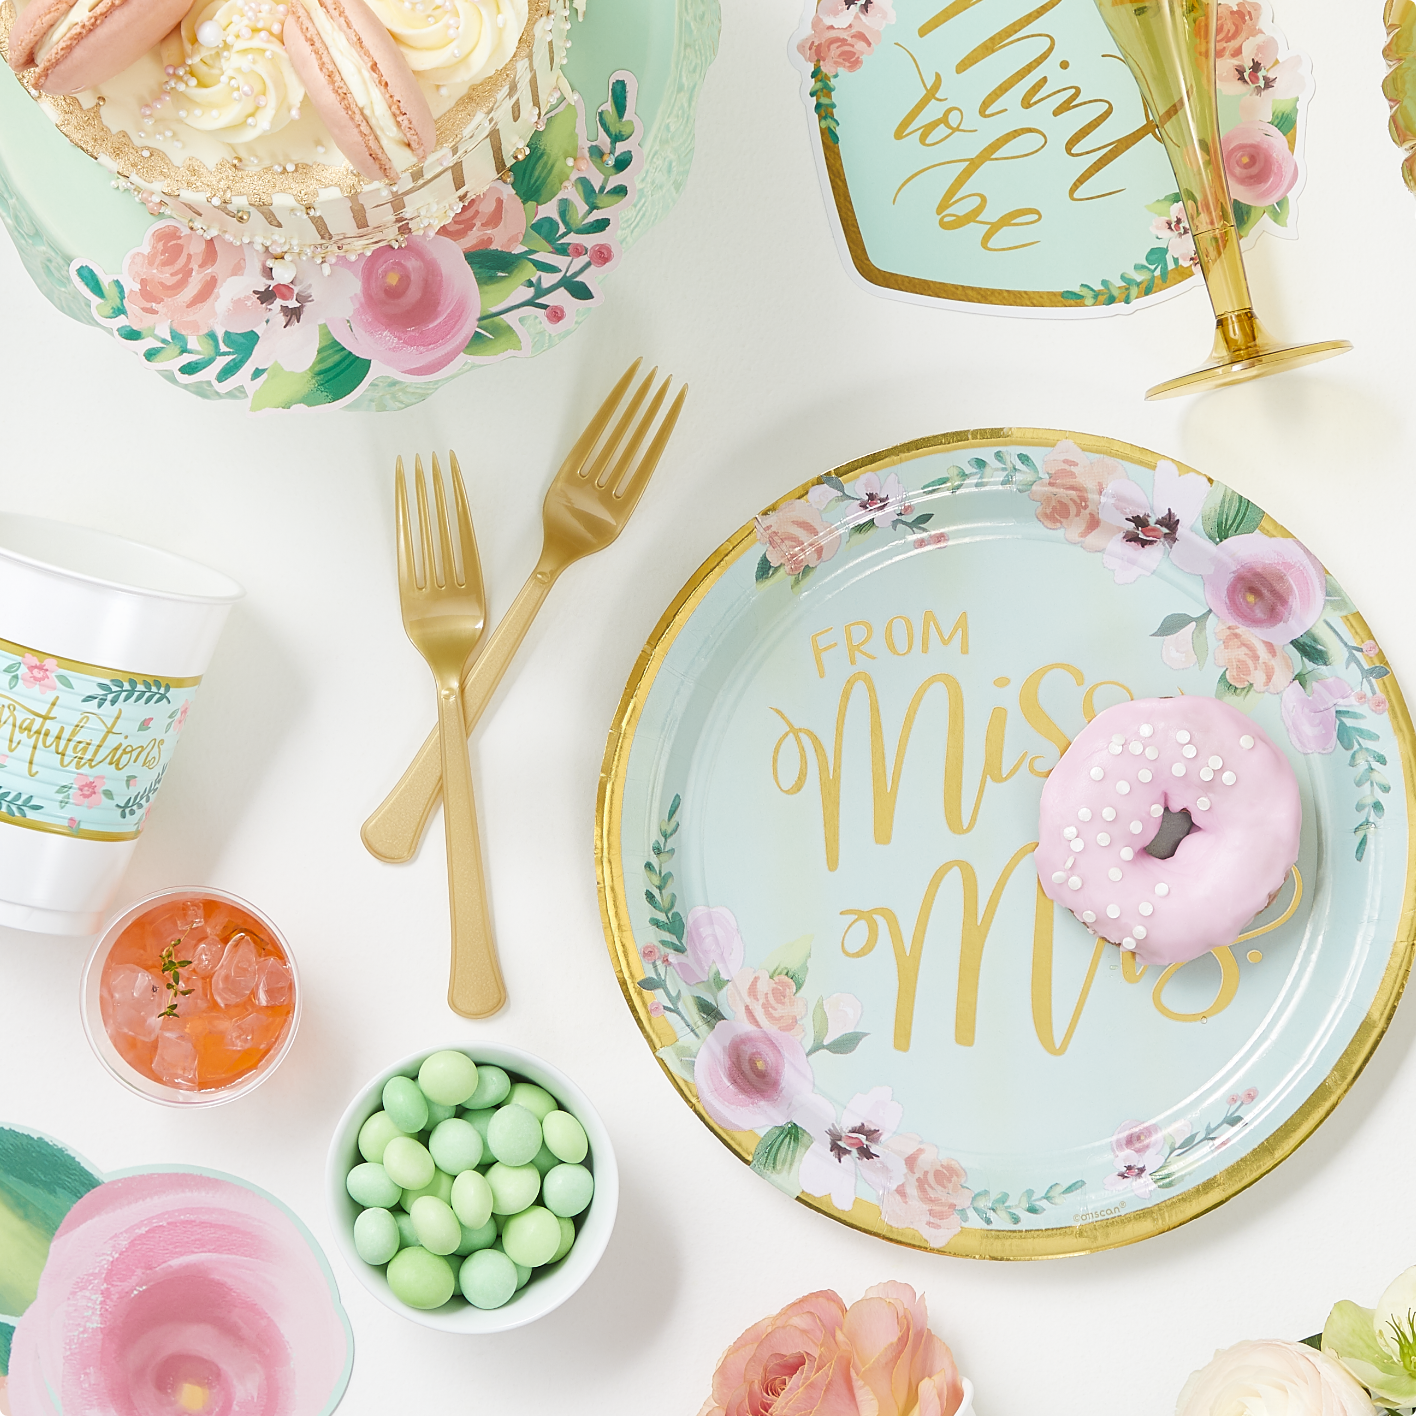 Une assiette ronde en papier ornée de fleurs roses, d'une bordure dorée et d'un titre « de Mlle à Mme », des couverts et des tasses dorés et un assortiment de desserts roses et menthe sur un fond blanc.